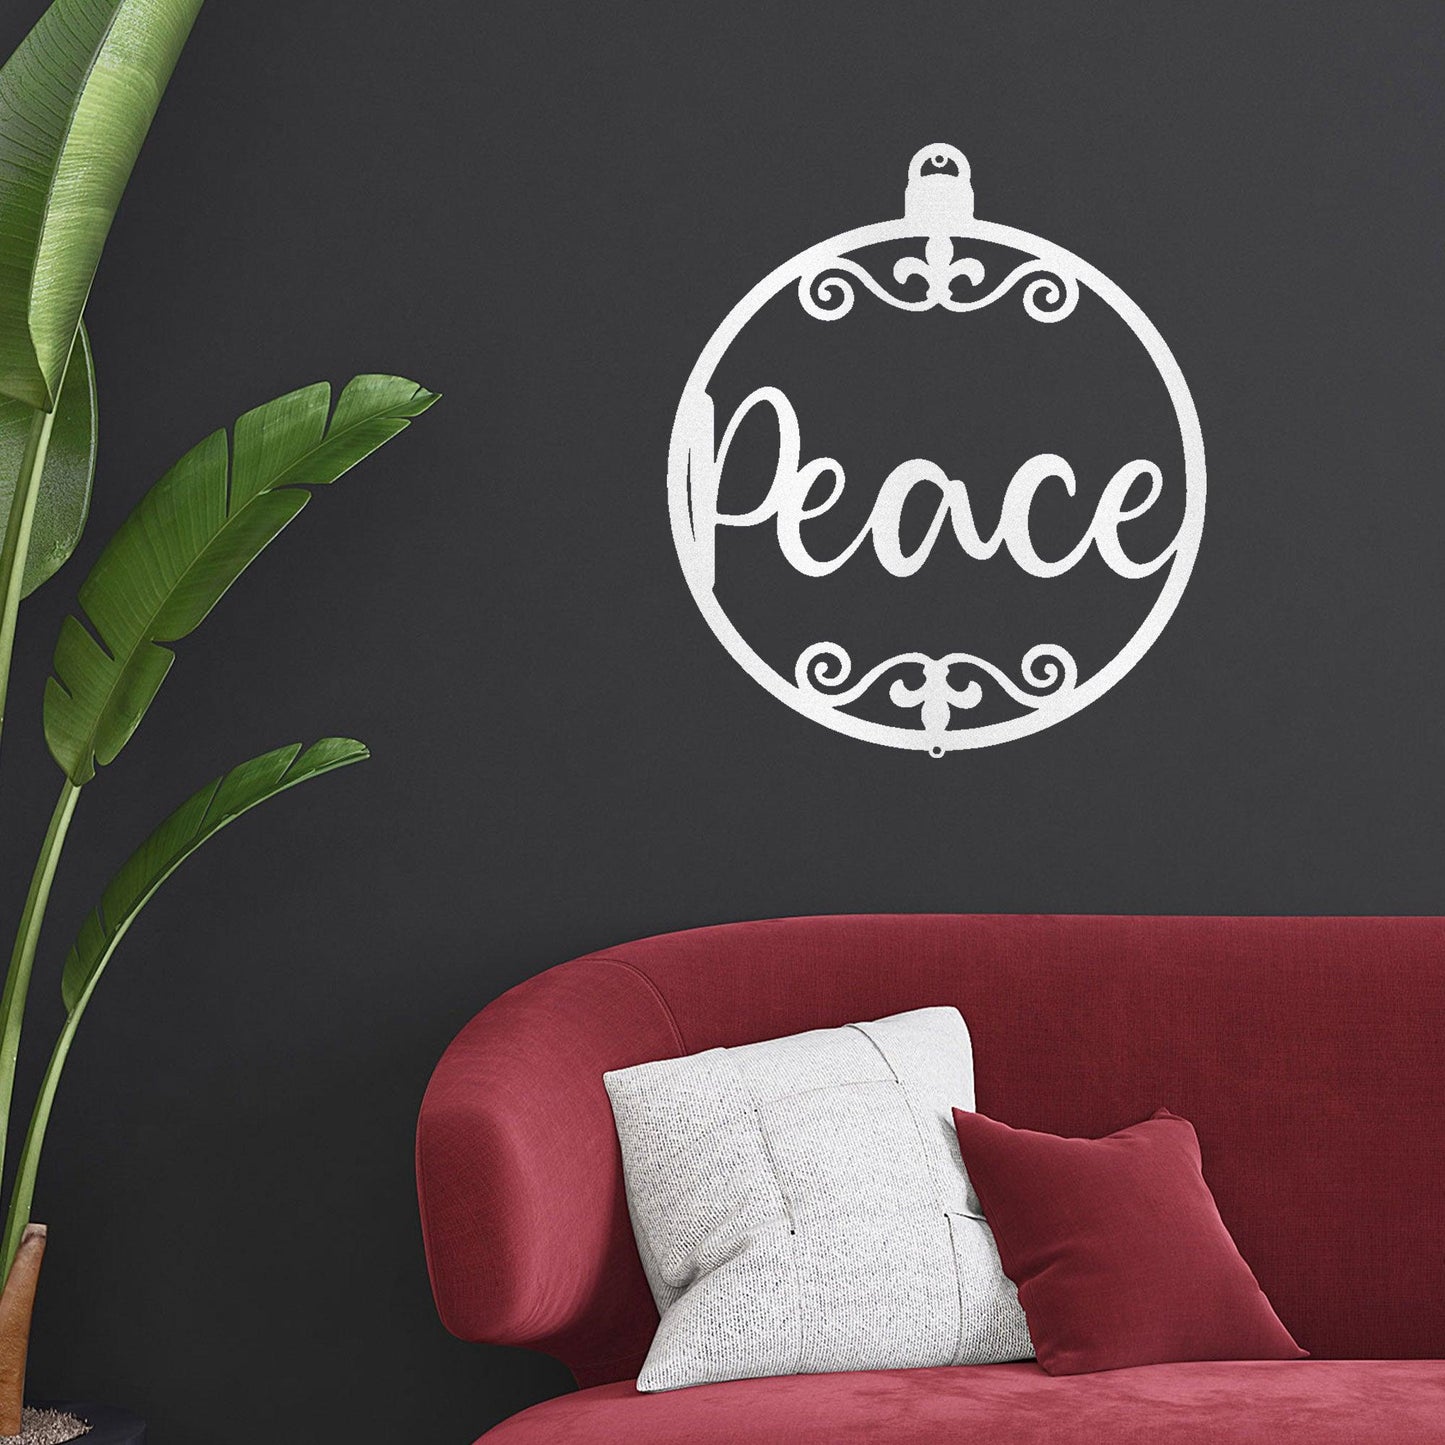 Peace Ornament Indoor Outdoor Steel Holiday Wall Sign - Mallard Moon Gift Shop